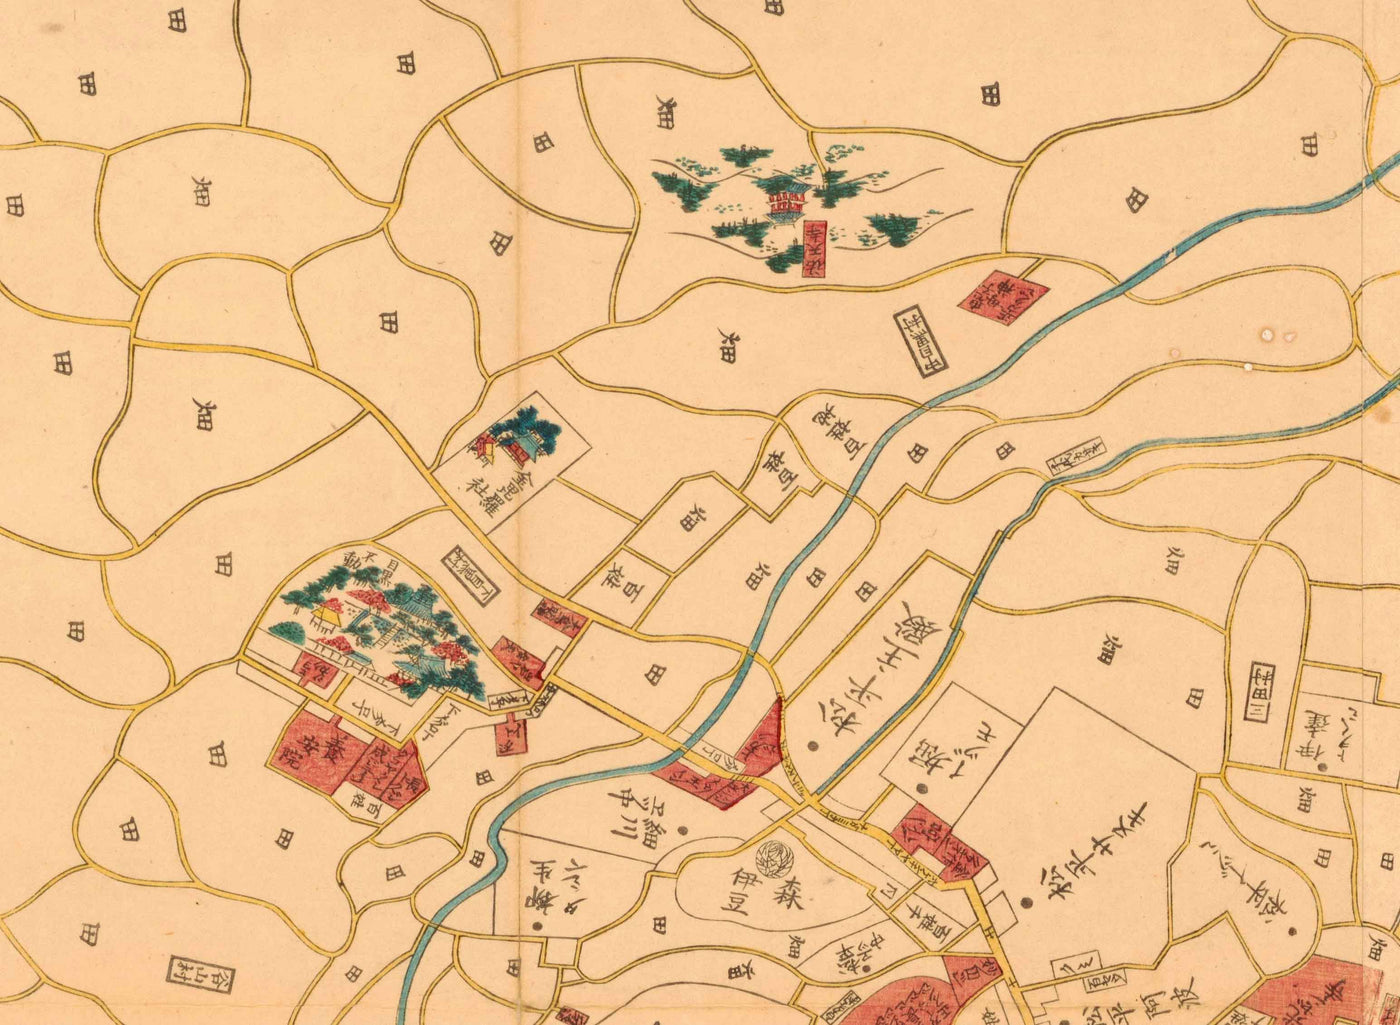 Alte Karte von Tokio im Jahr 1860 von Mohe Subaraya - Yokohama, Kawasaki, Chiba, Minato, Shinjuku